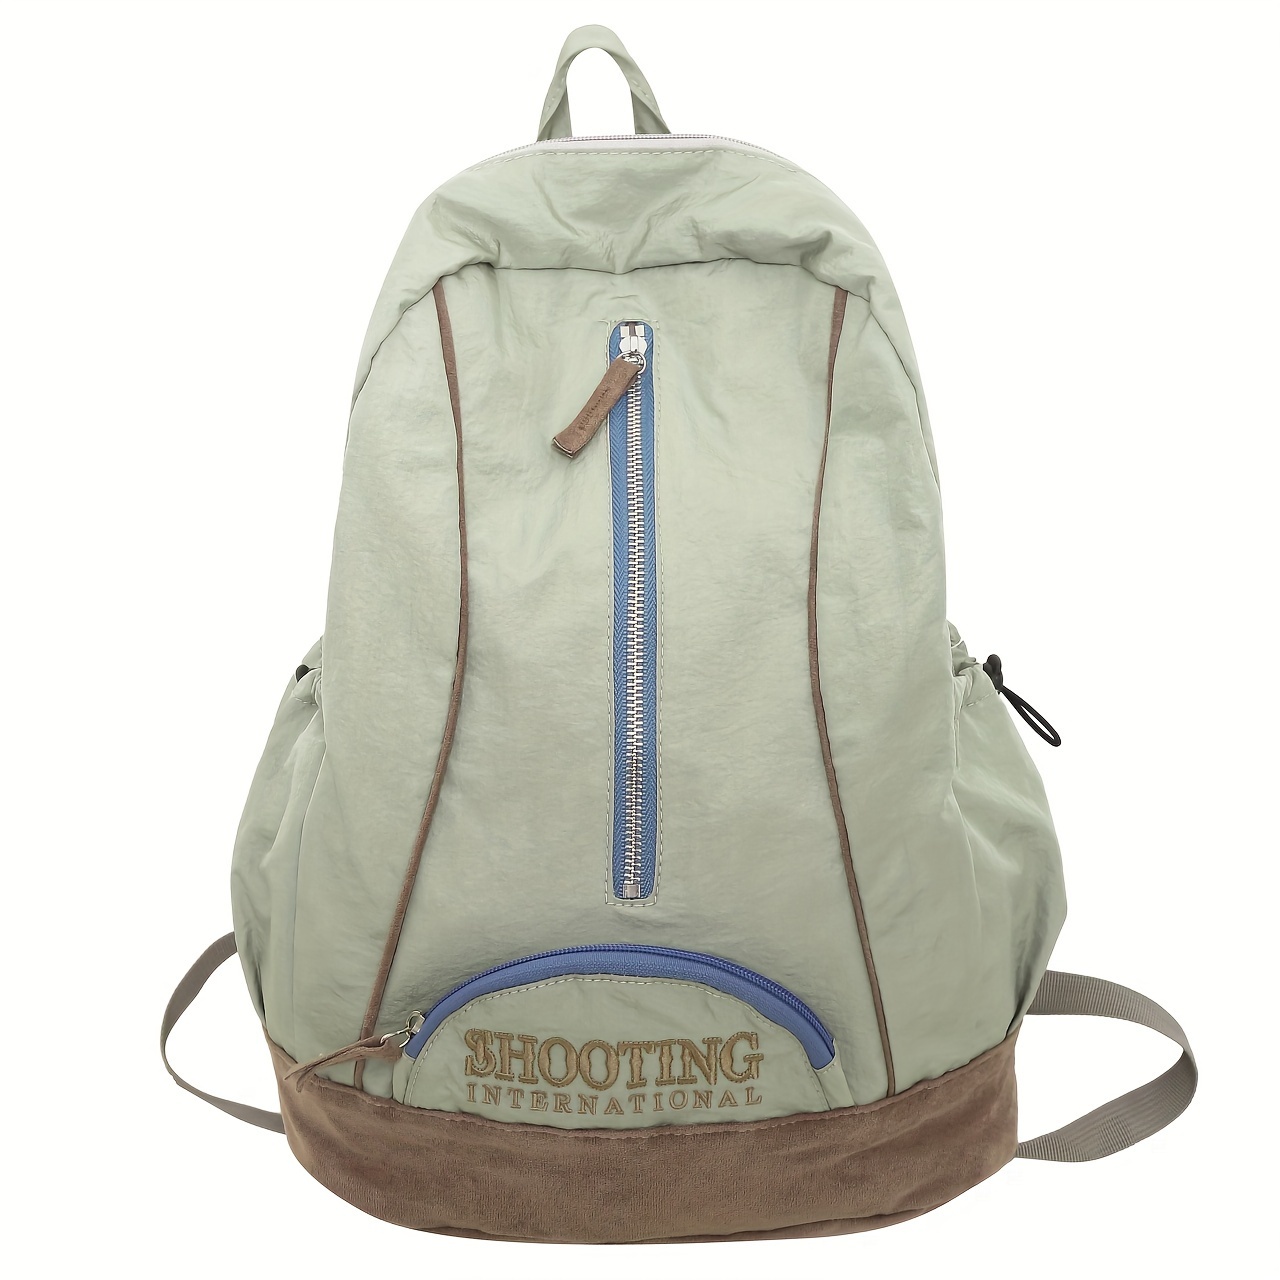 

Vintage Embroidered Backpack, Large Capacity Shoulder Schoolbag, Outdoor Sport Travel Daypack